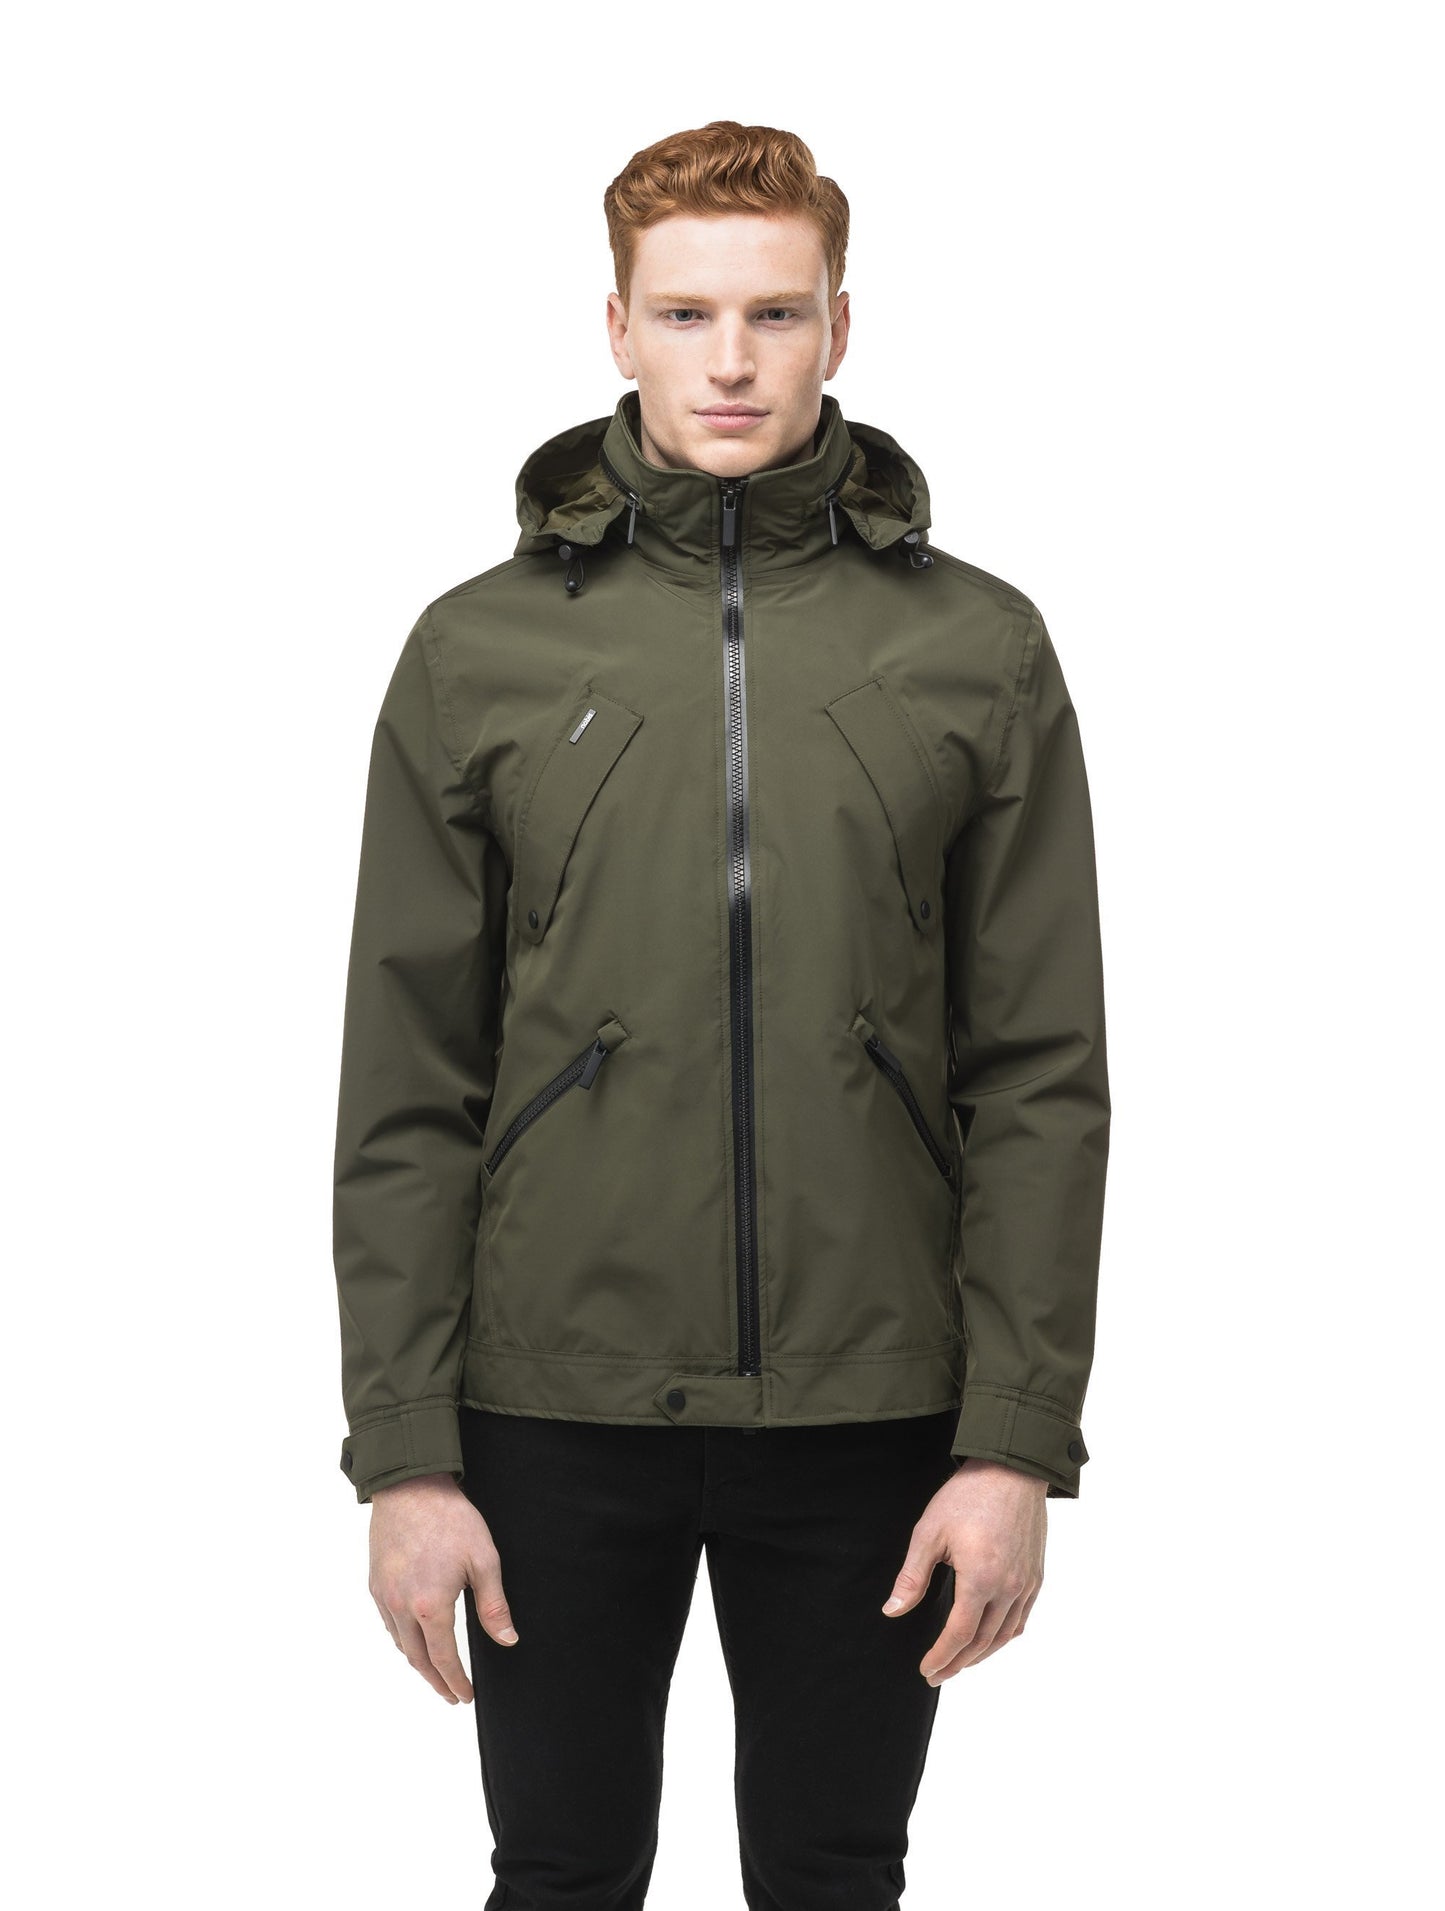 Men's waist length waterproof jacket with exposed zipper in Fatigue